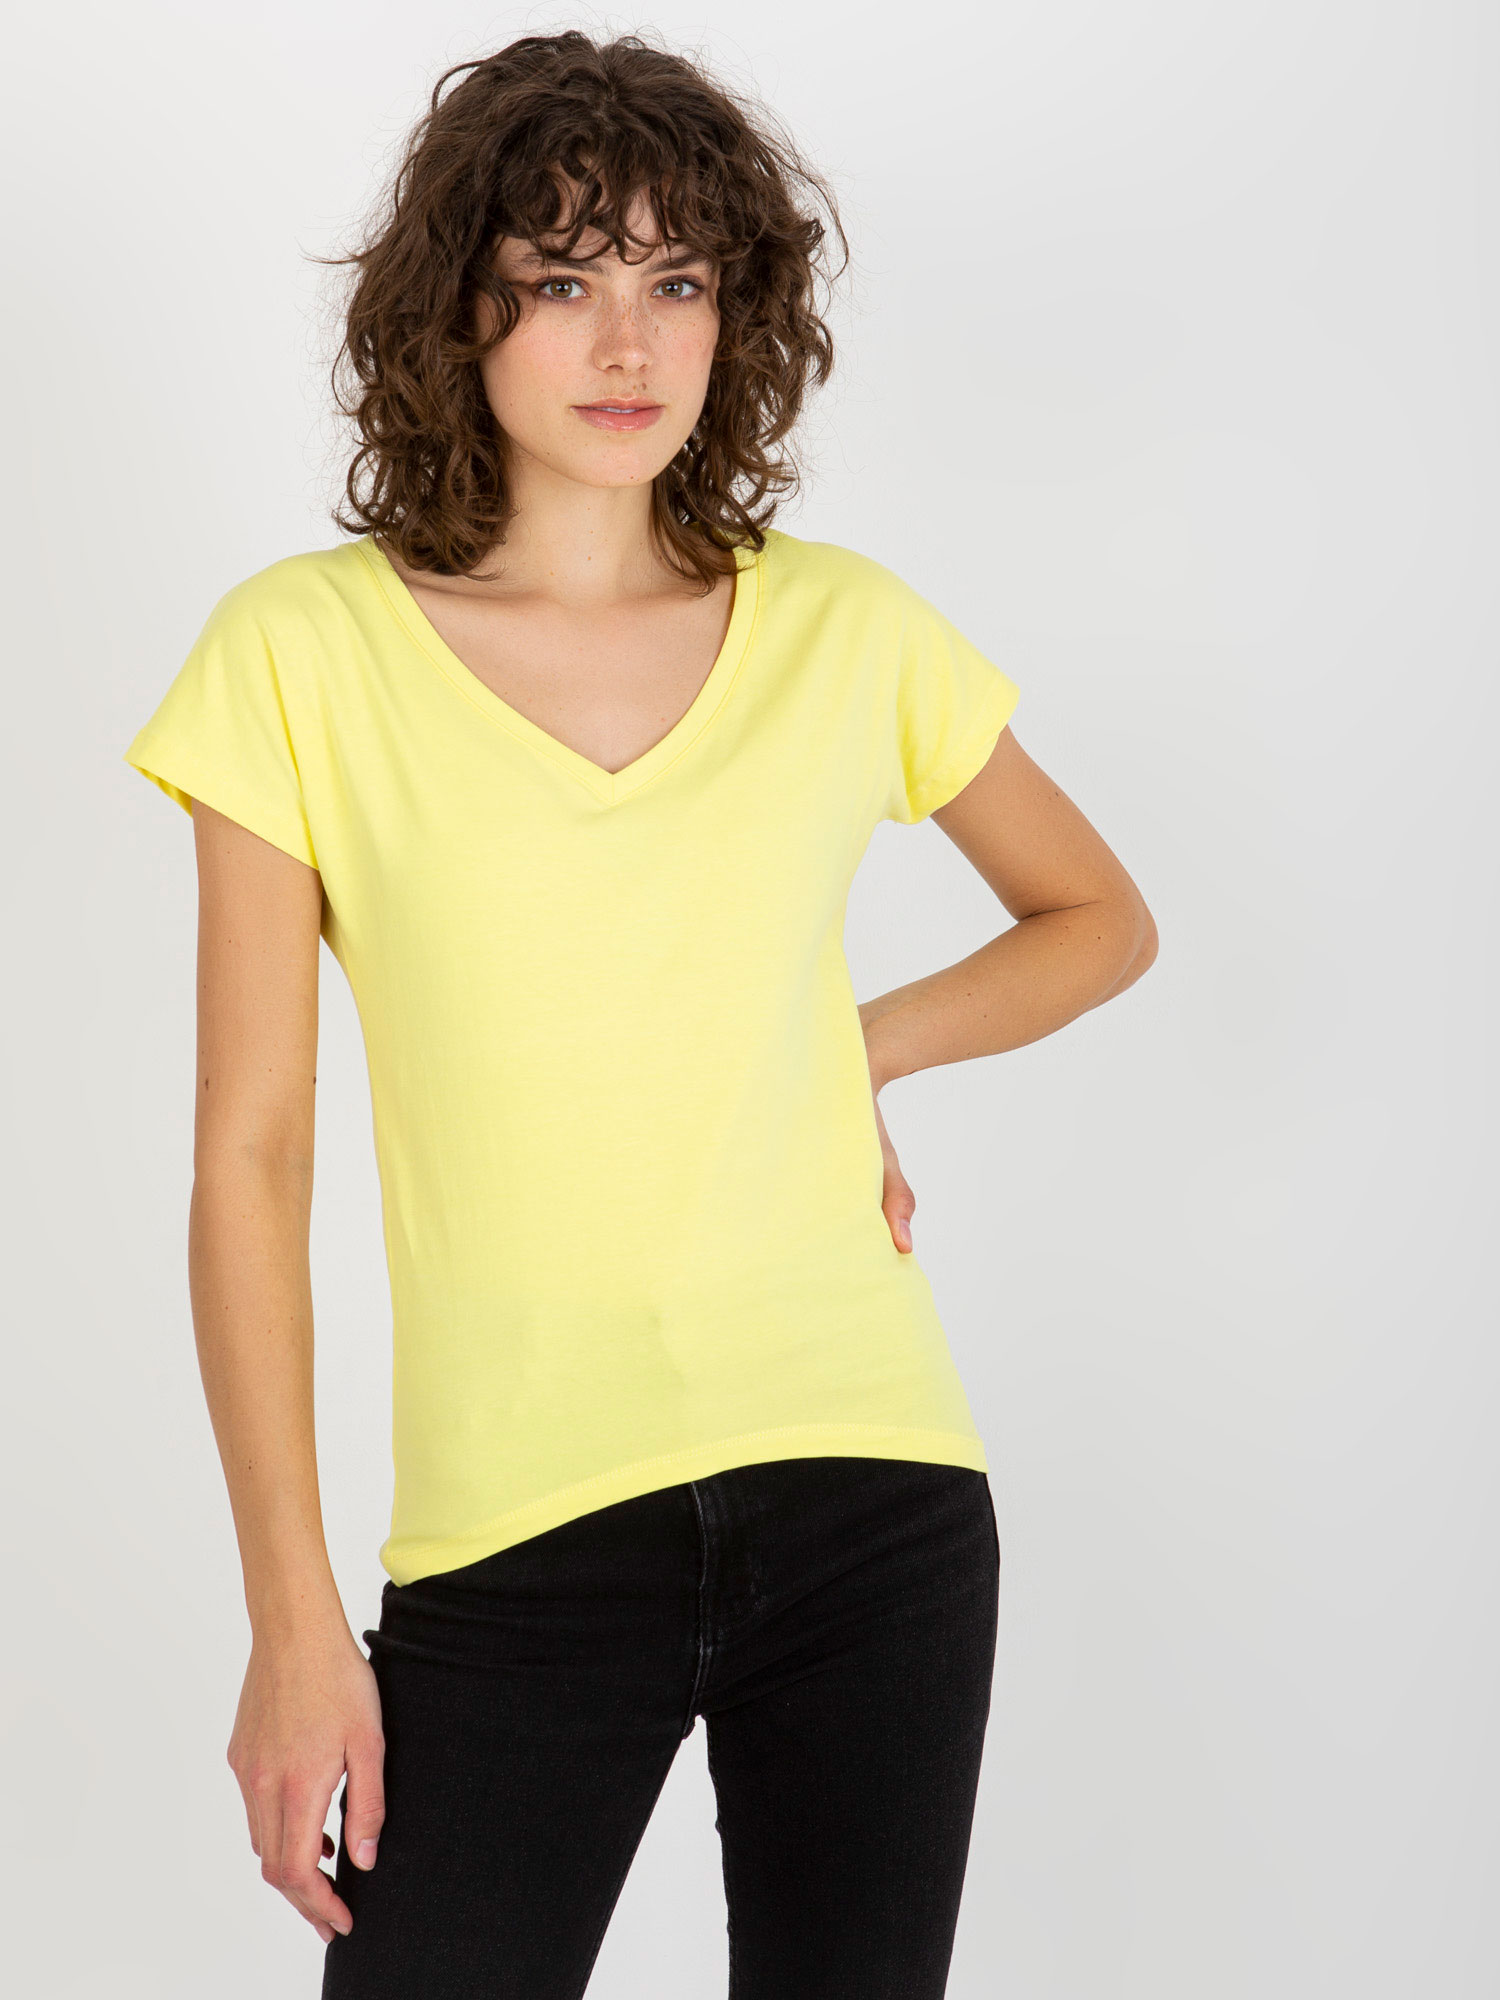 Svetložlté dámske tričko s výstrihom VI-TS-035.01P-light yellow Veľkosť: XL